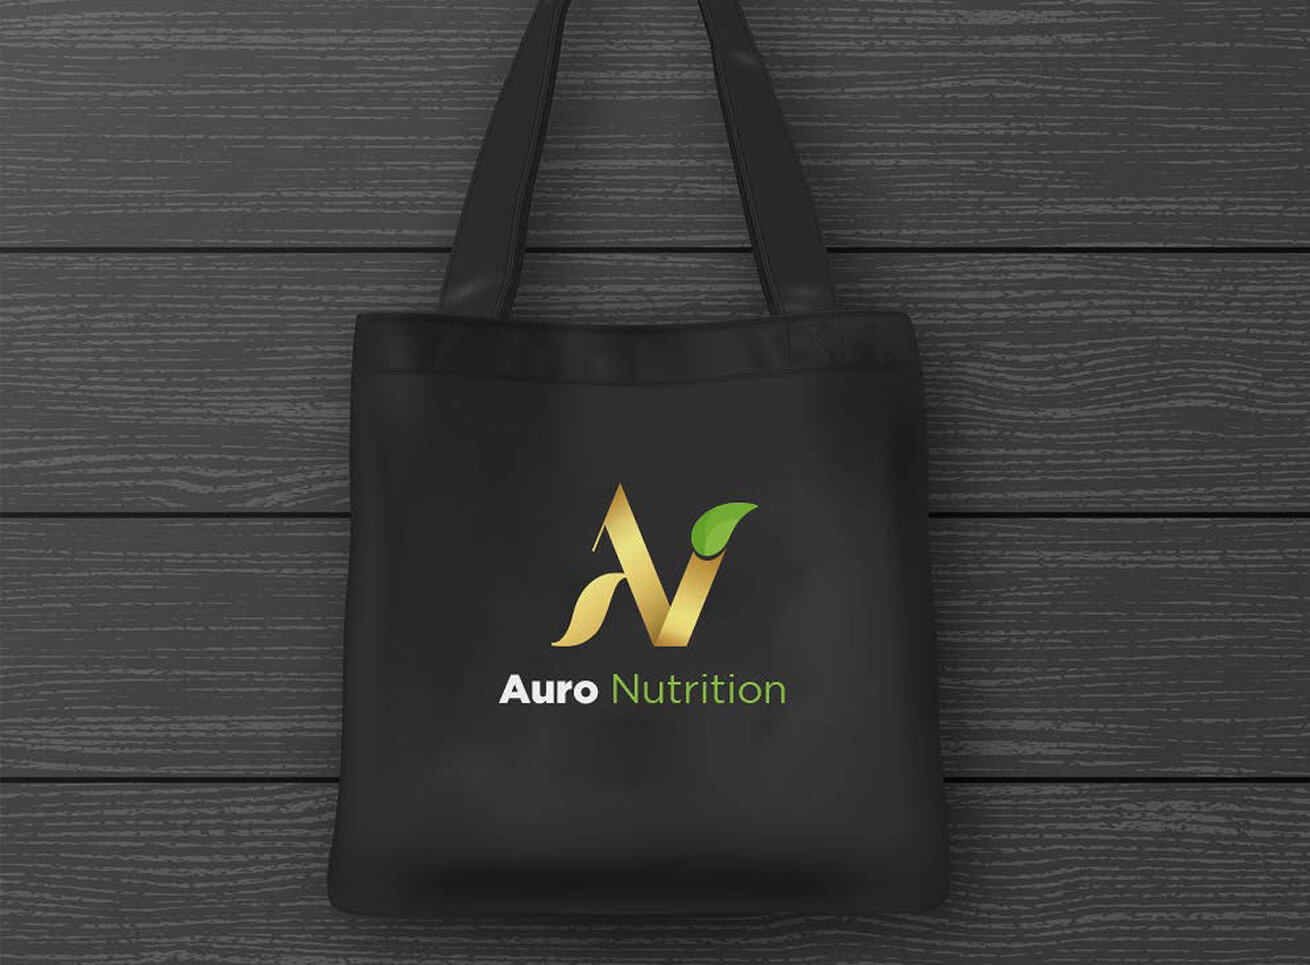 Auro nutrition brand